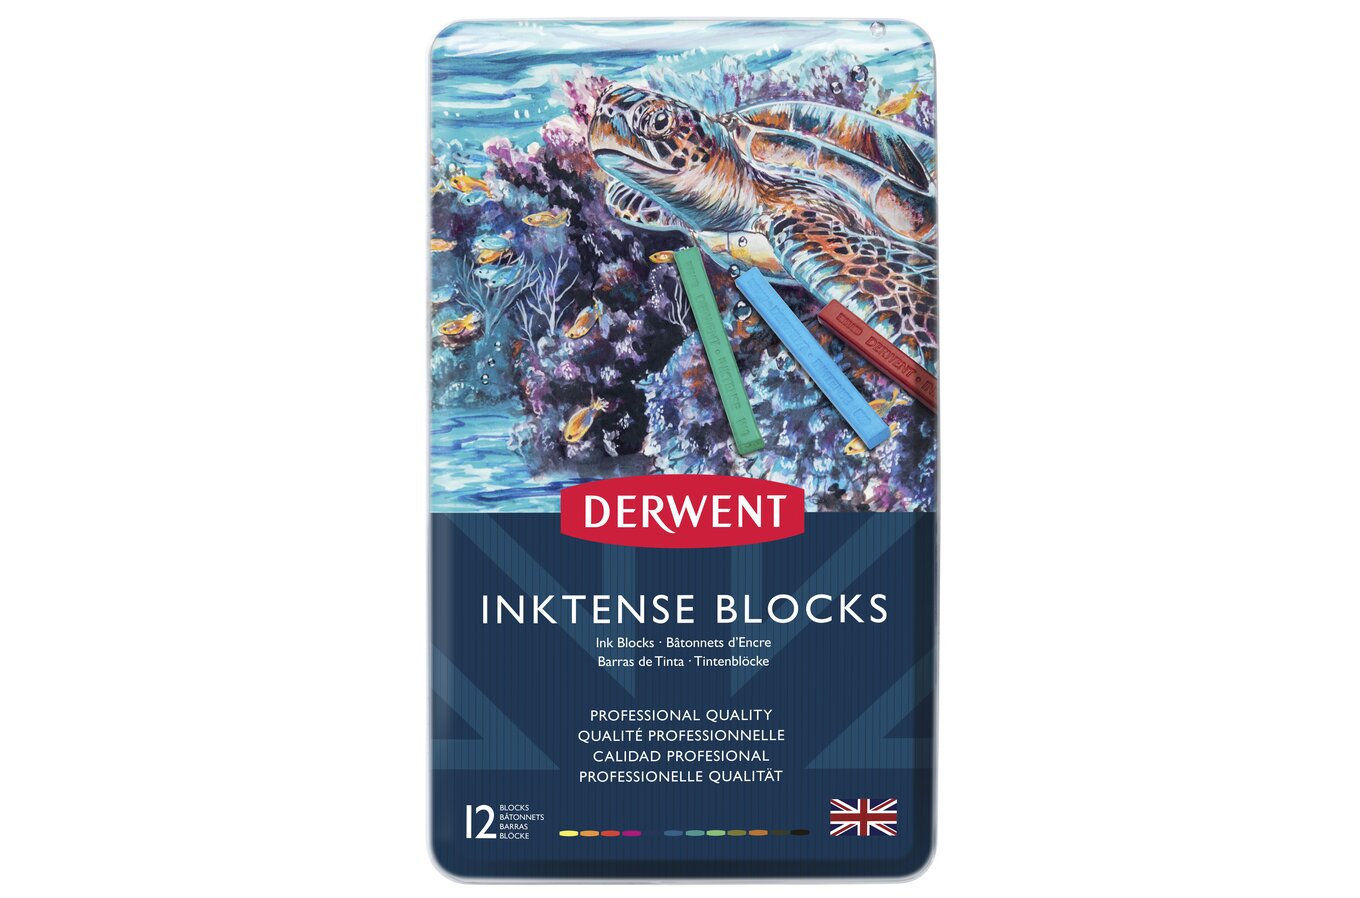 Derwent Inktense Block Set of 24 in a Tin